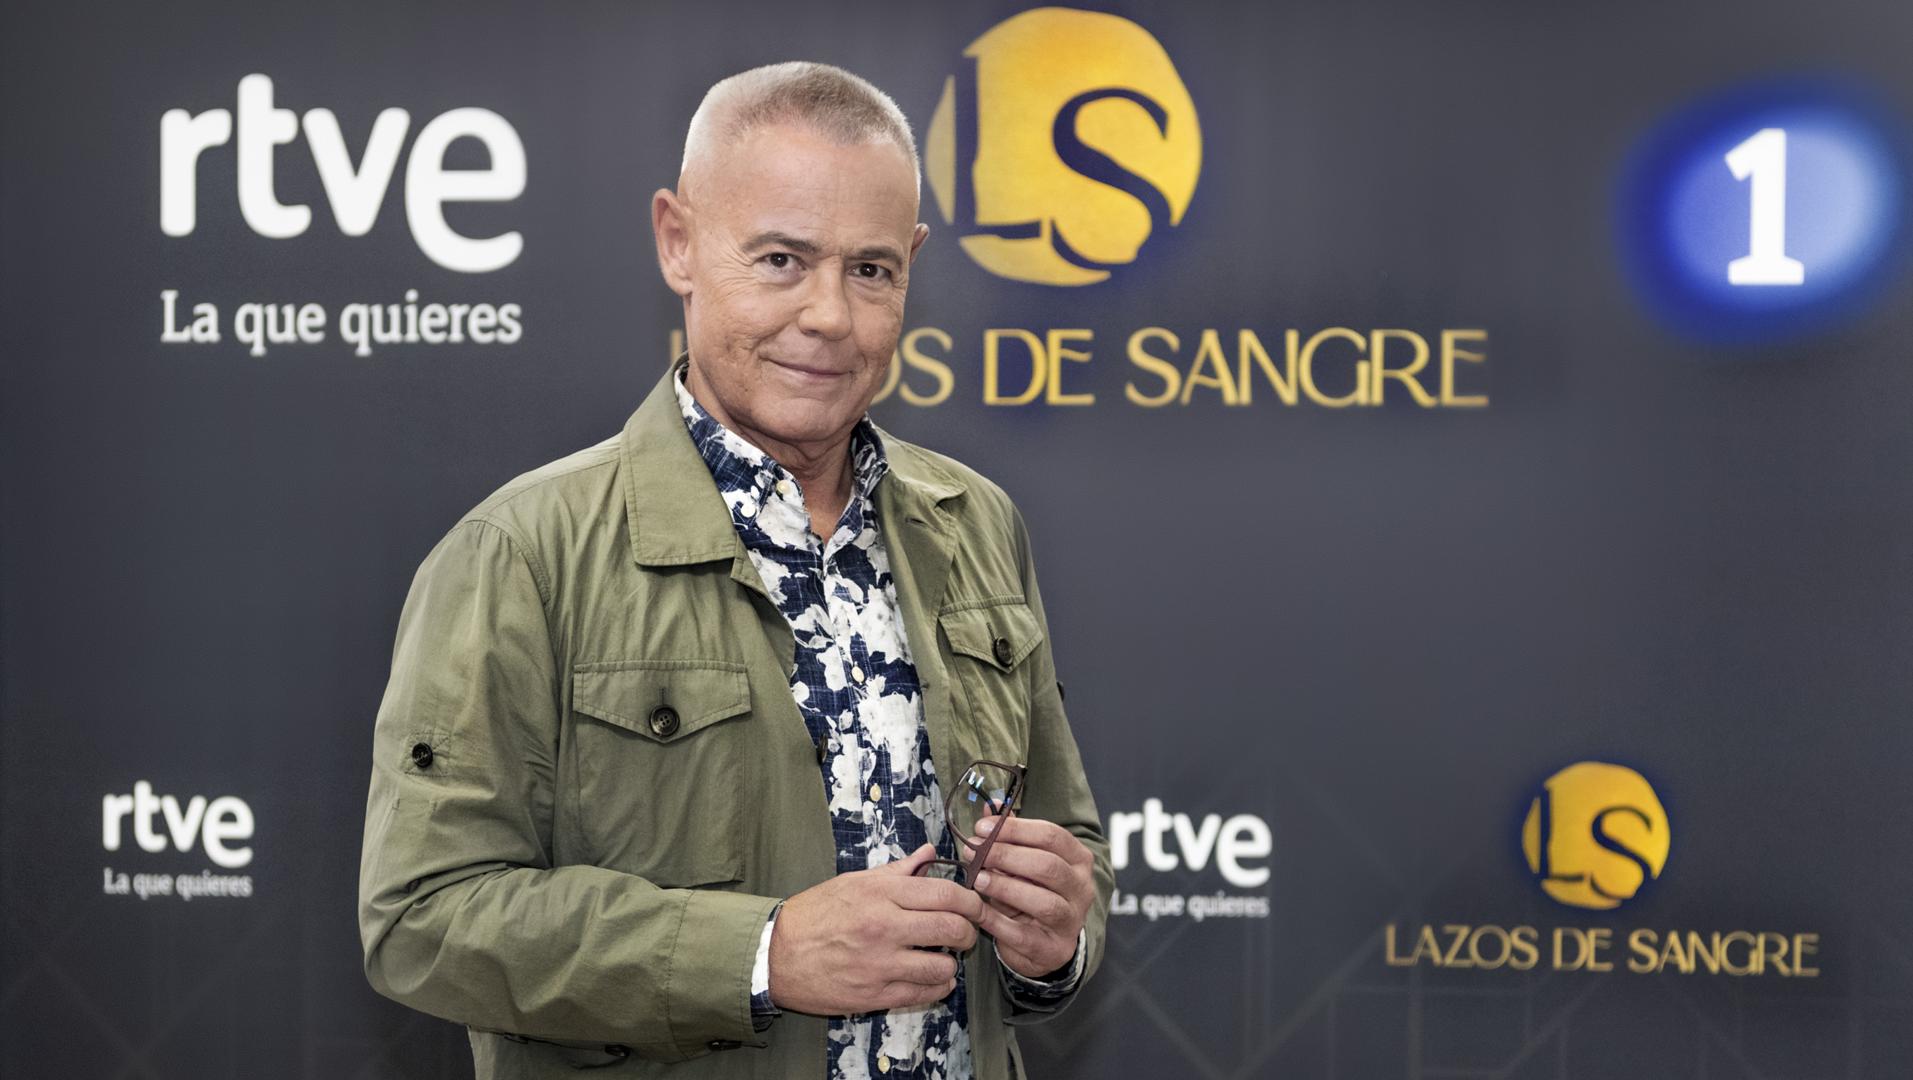 Jordi González, TVE’s unexpected asset to compete against Ana Rosa